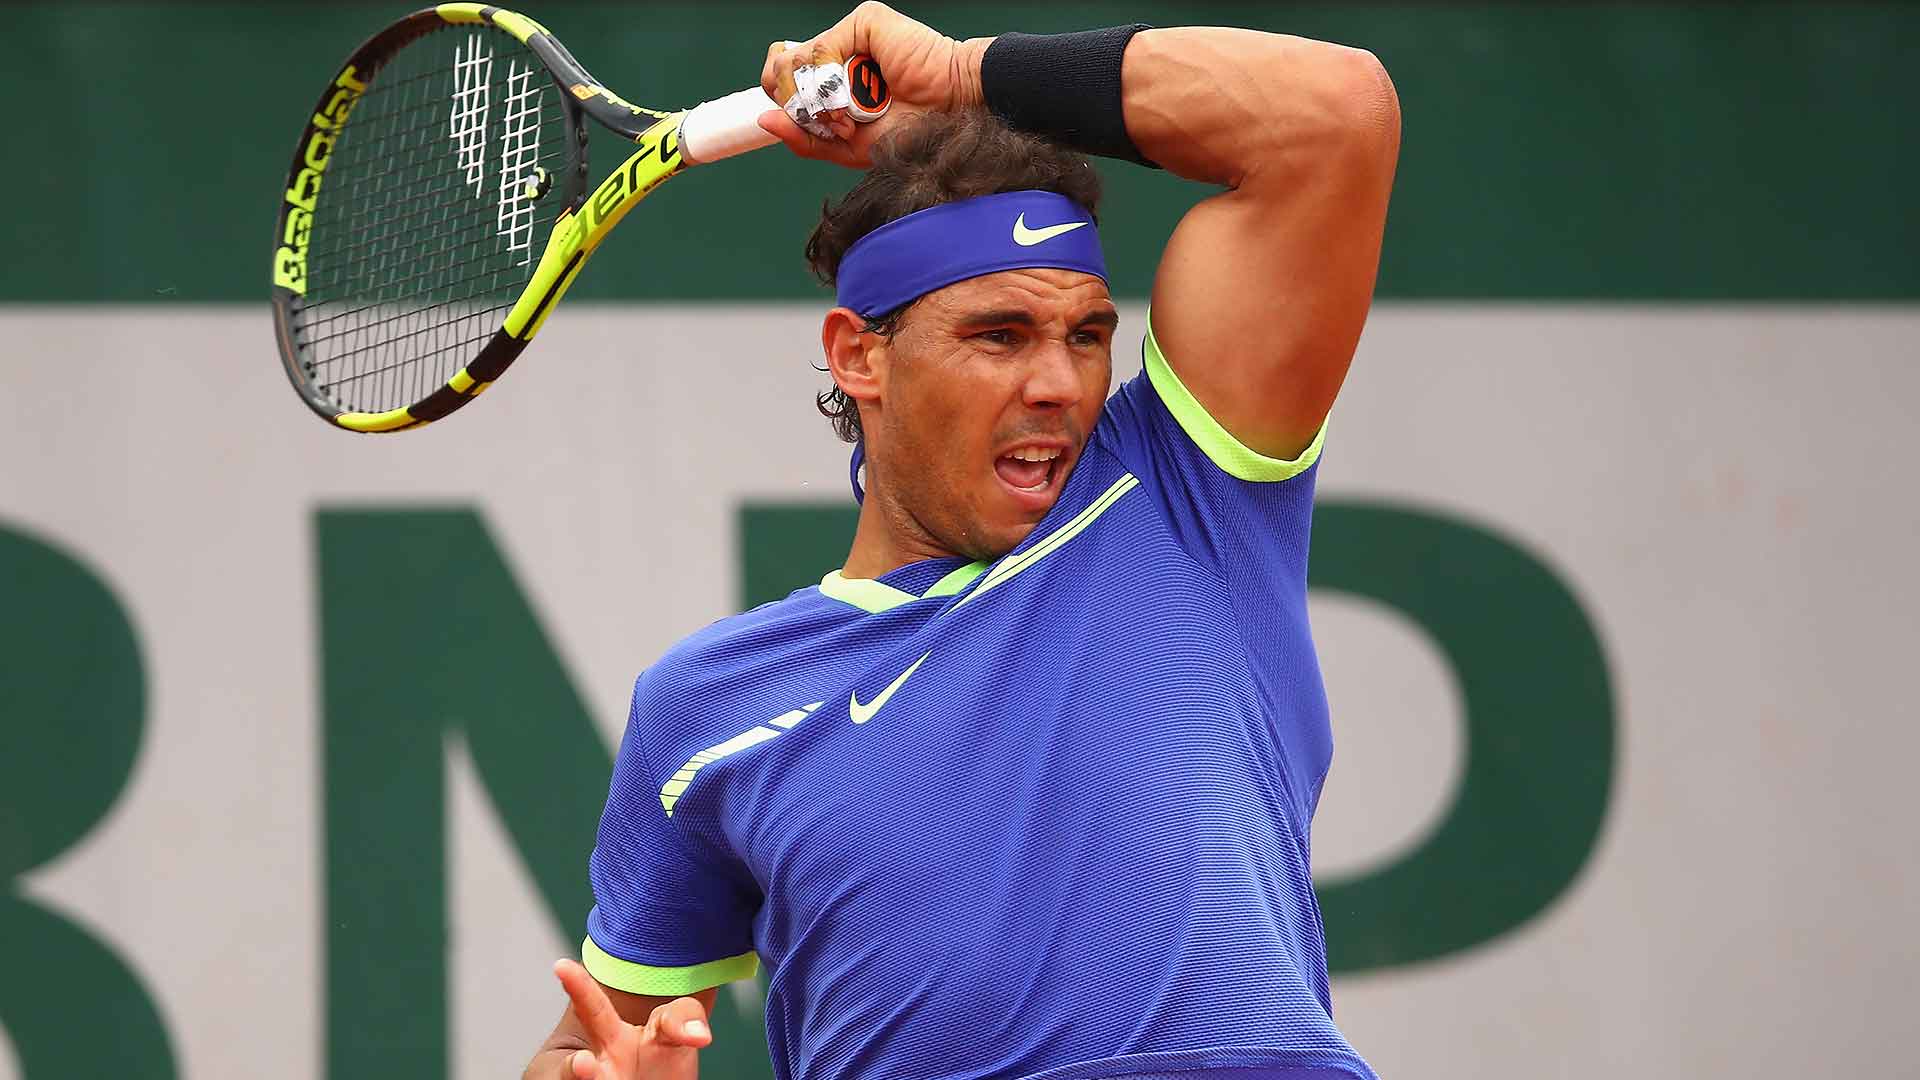 Rafael Nadal defeated in Kooyong return but eyes Australian Open